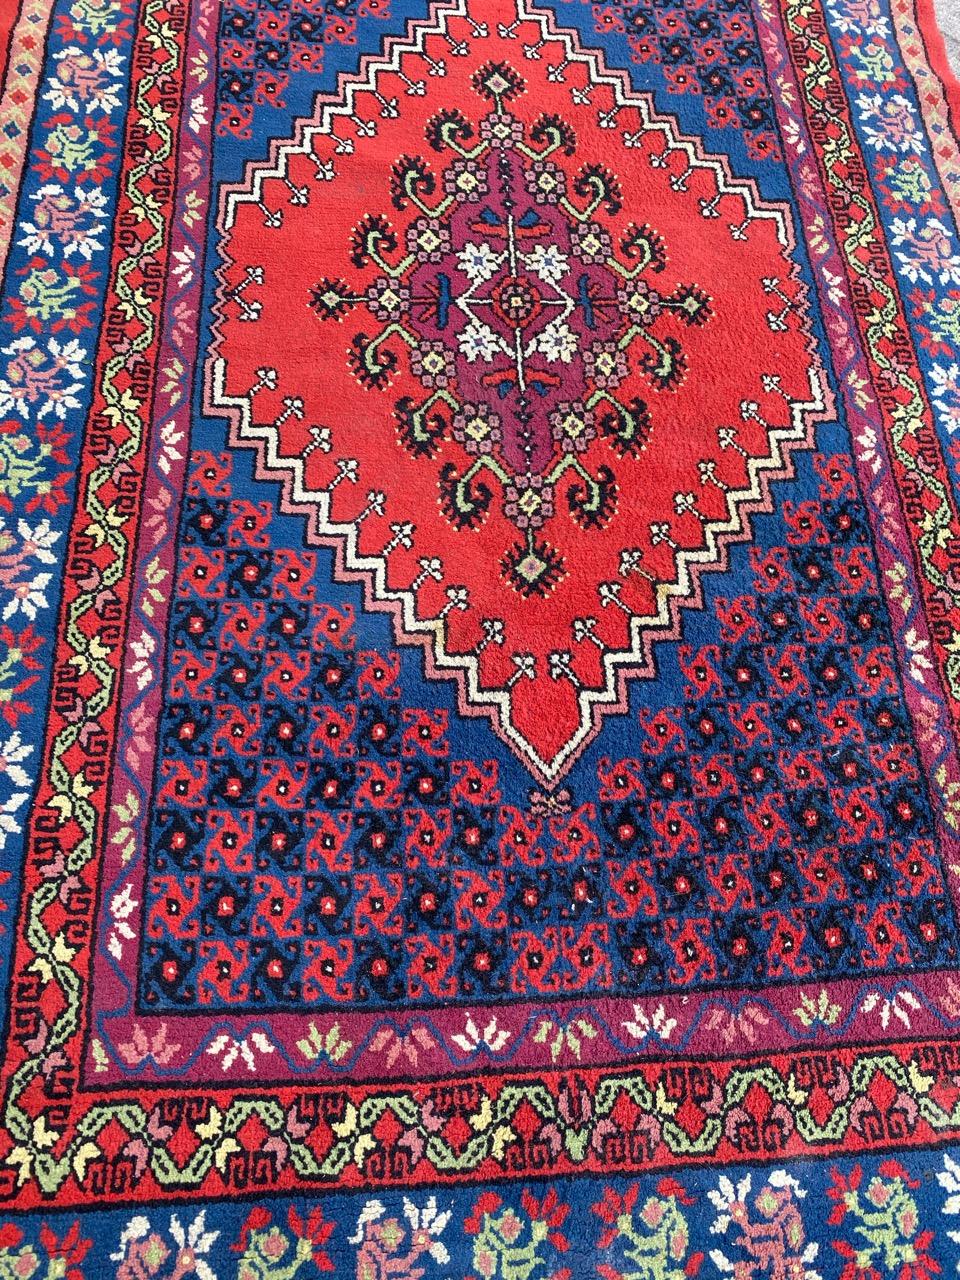 Exquisiter tunesischer Teppich aus dem späten 20. Jahrhundert mit einem fesselnden geometrischen Muster und leuchtenden Farben wie Rot, Blau, Grün und Violett. Dieses Meisterwerk wurde in sorgfältiger Handarbeit aus Wollsamt auf einem Baumwollgrund